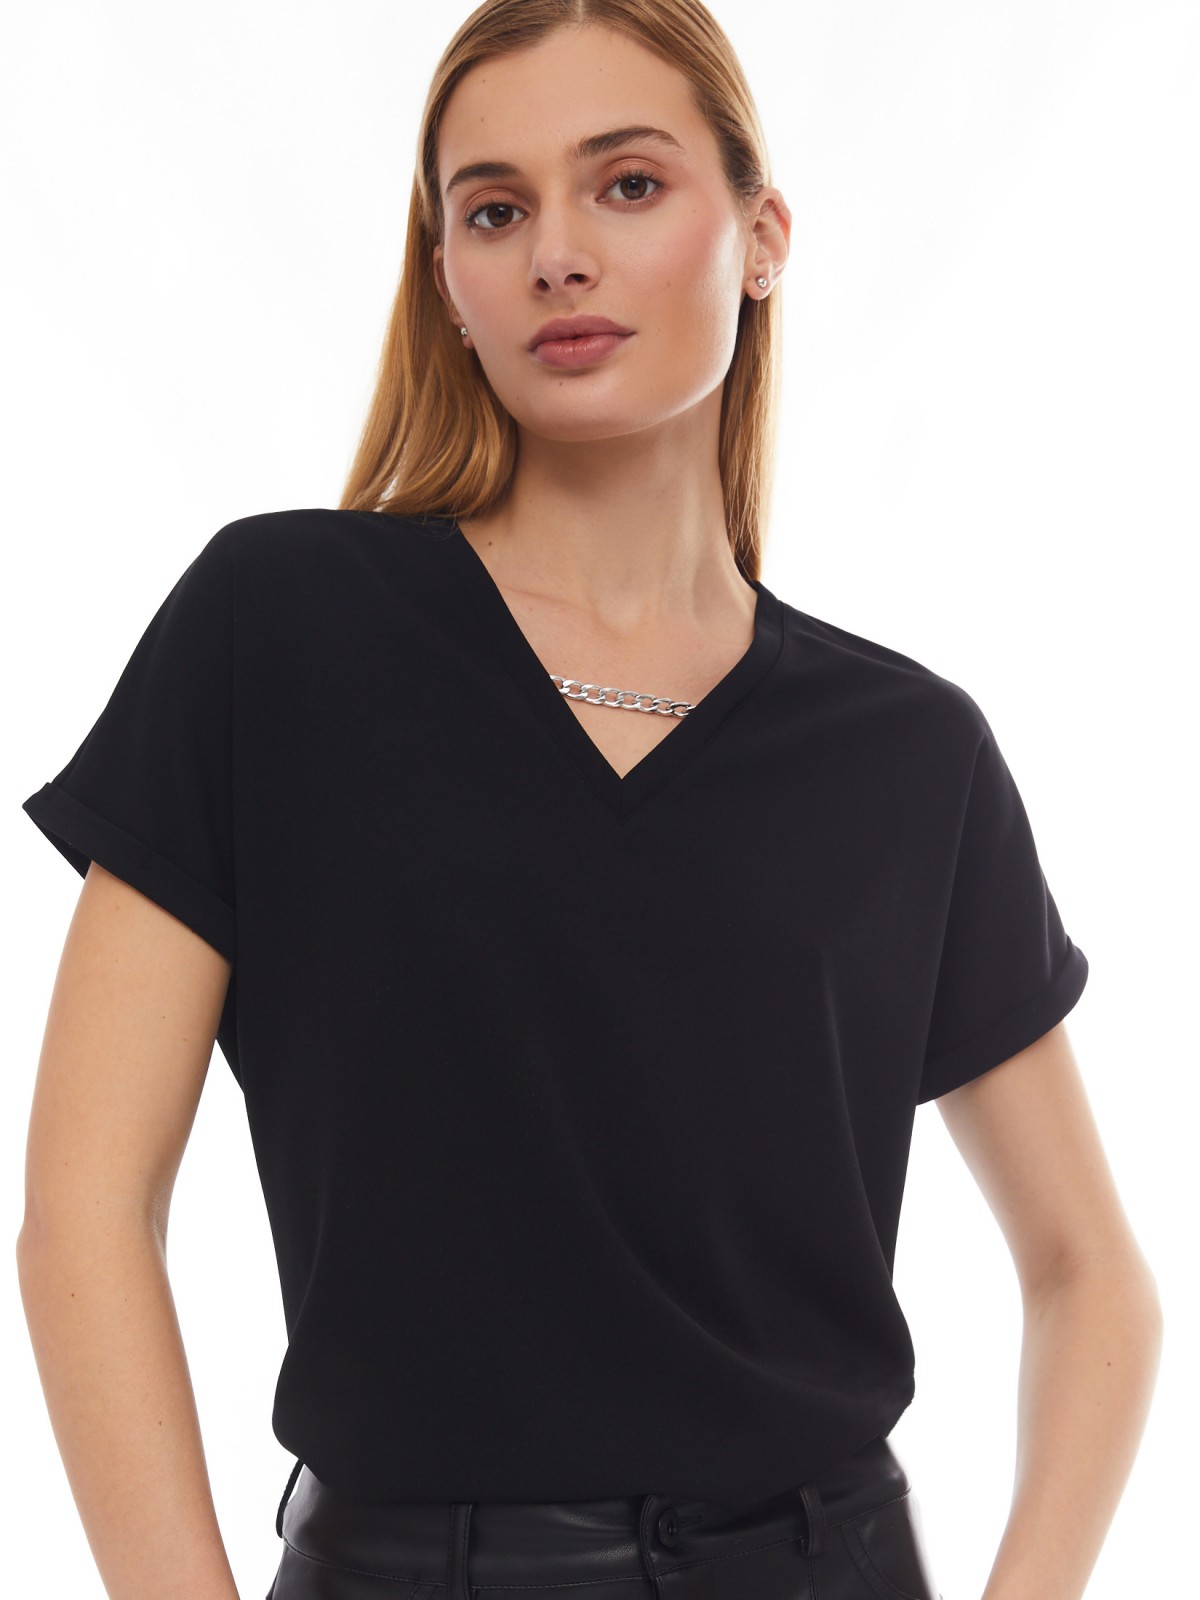 Блузка-футболка с V-образным вырезом и цепочкой zolla 024133226533, цвет черный, размер XS